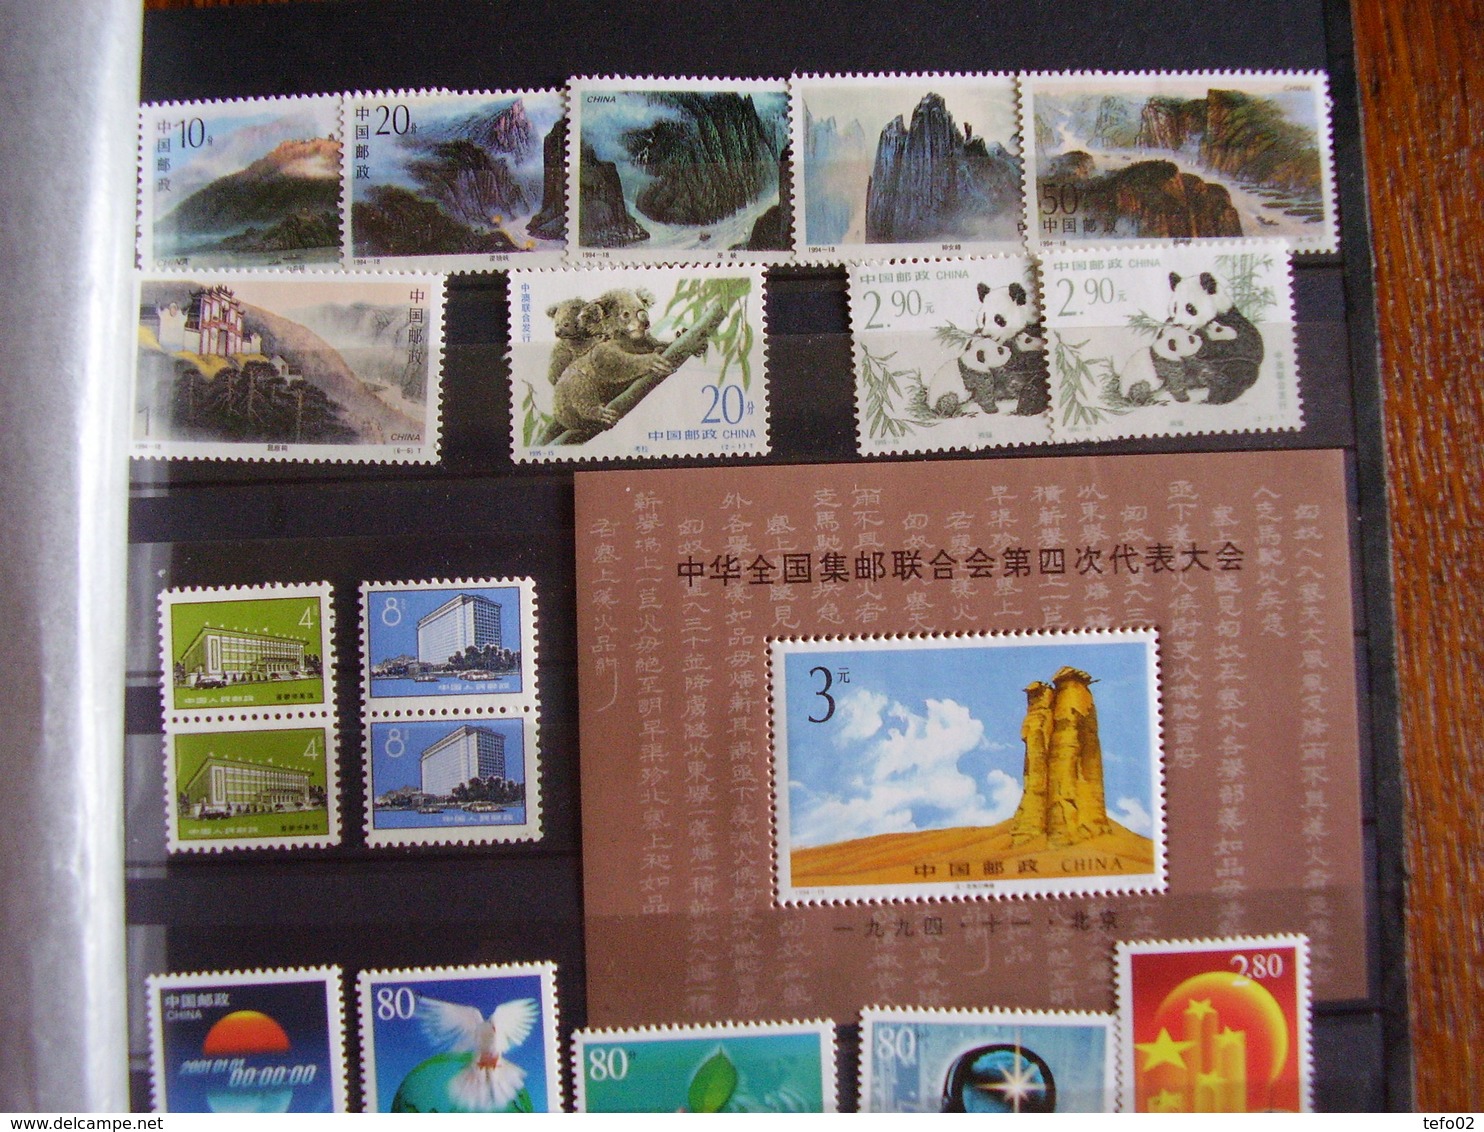 Cina Repubblica Popolare. Buon insieme di francobolli e foglietti. 19 foto